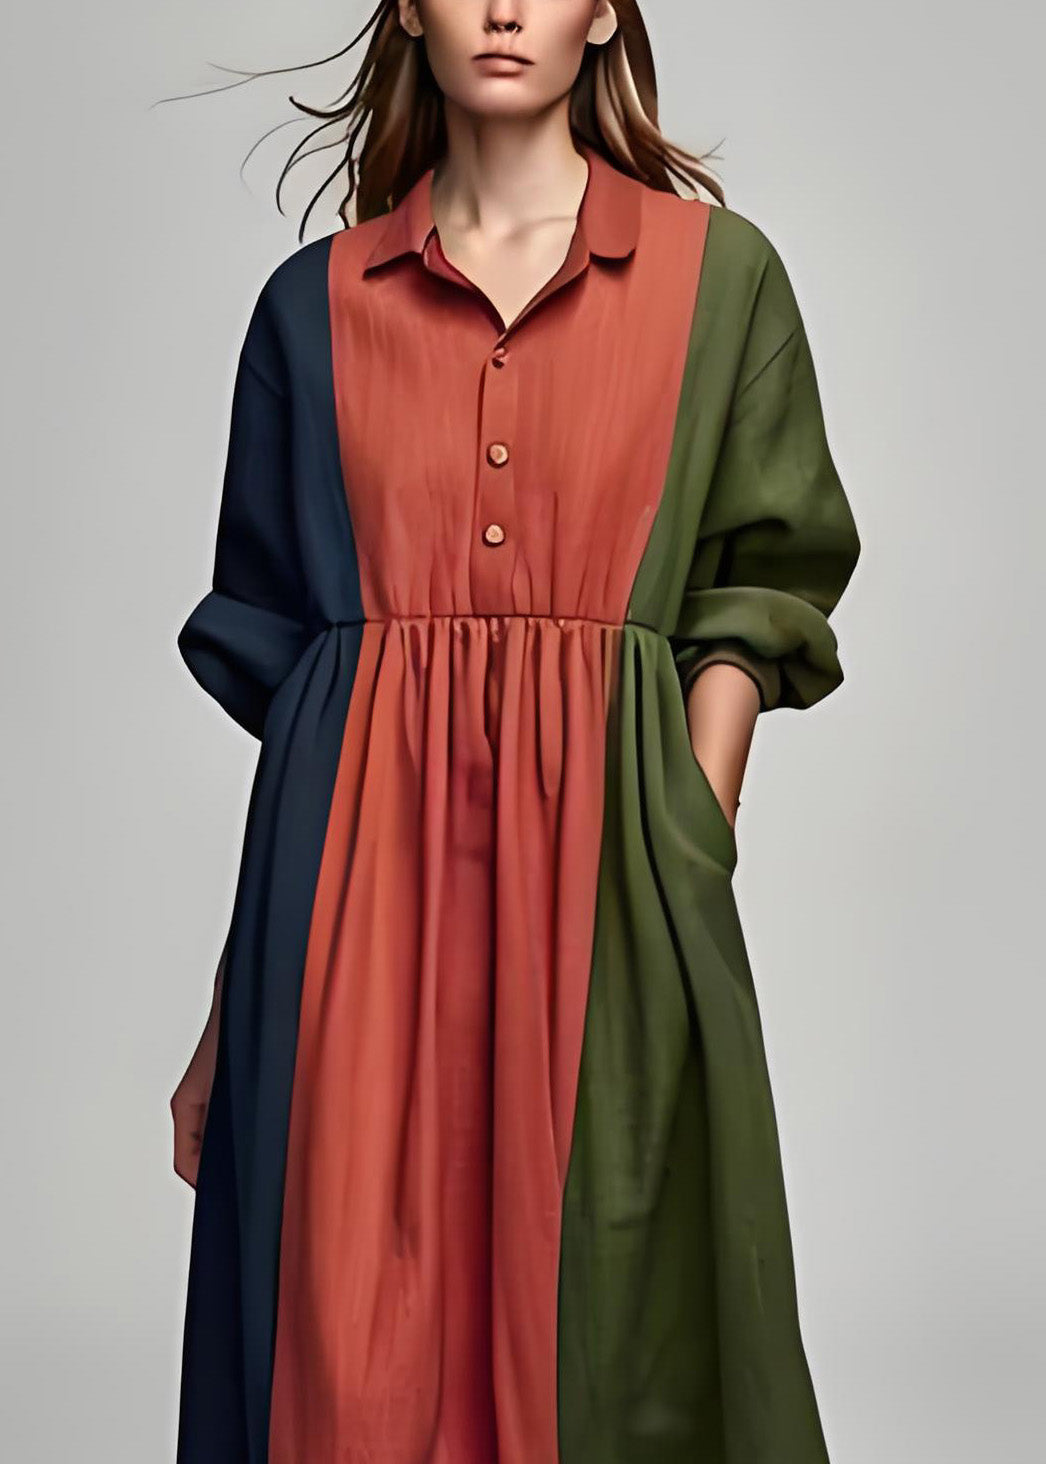 Italian Colorblock Peter Pan Collar Patchwork Cotton Dress Long Sleeve